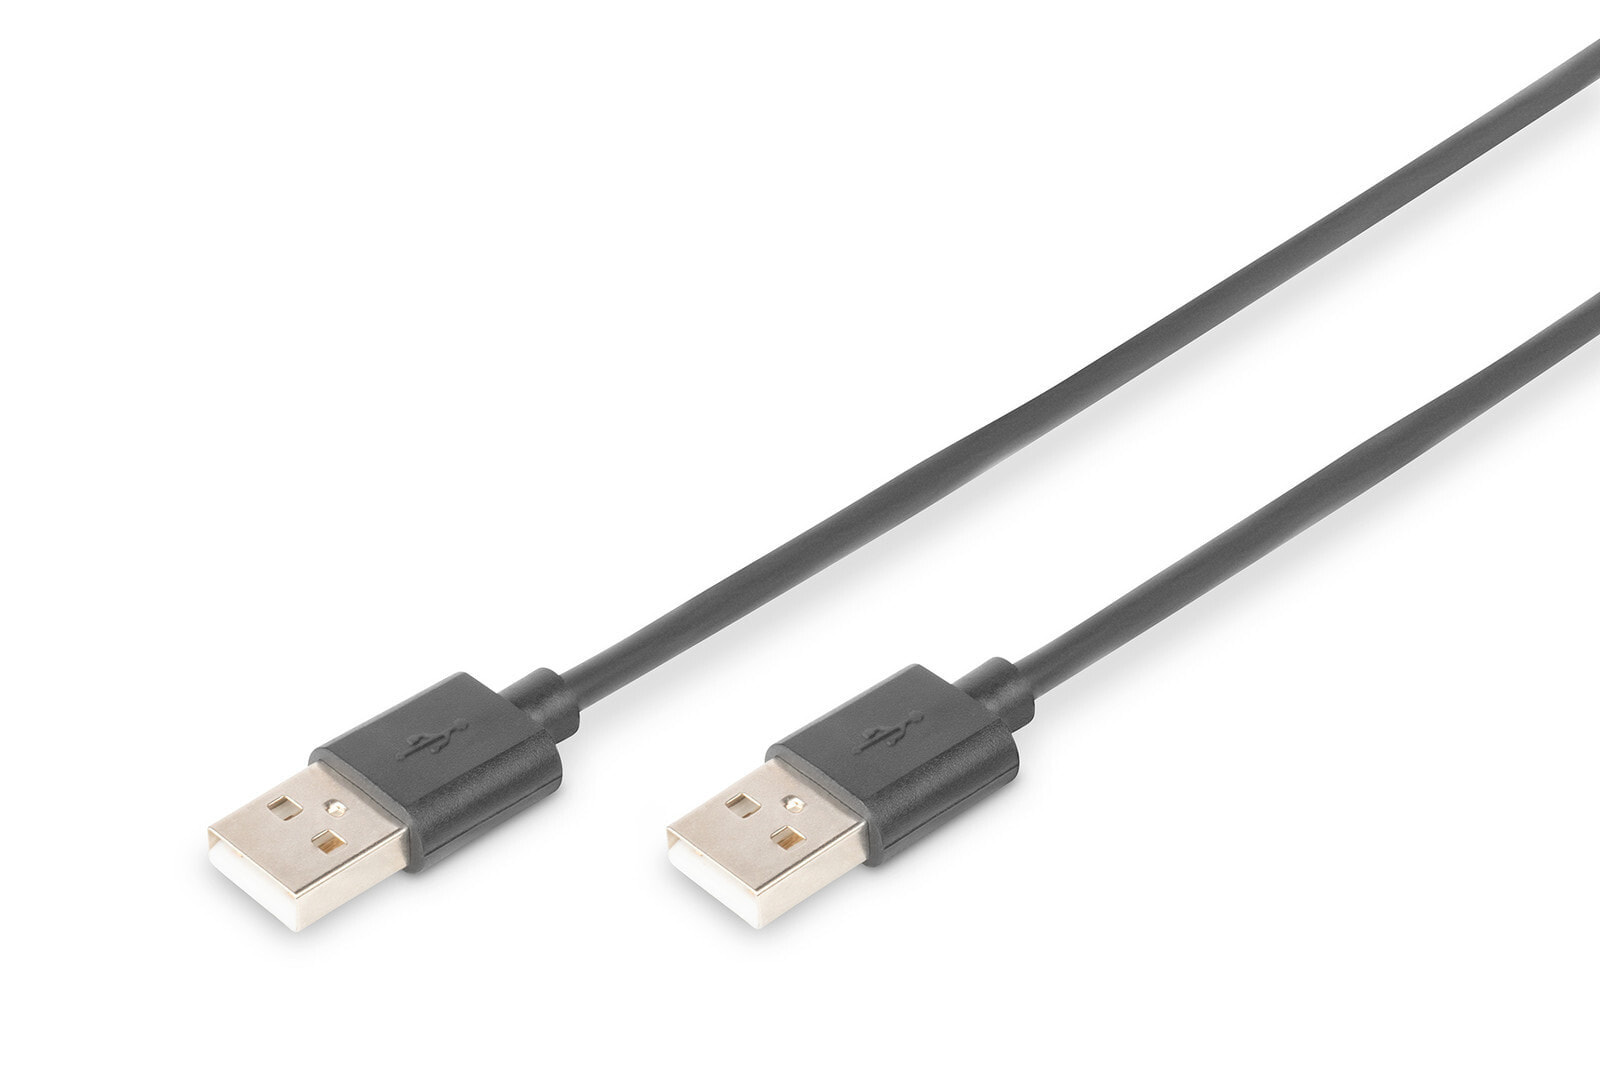 ASSMANN Electronic 1.0m USB 2.0 A/A USB кабель 1 m USB A Черный AK-300101-010-S